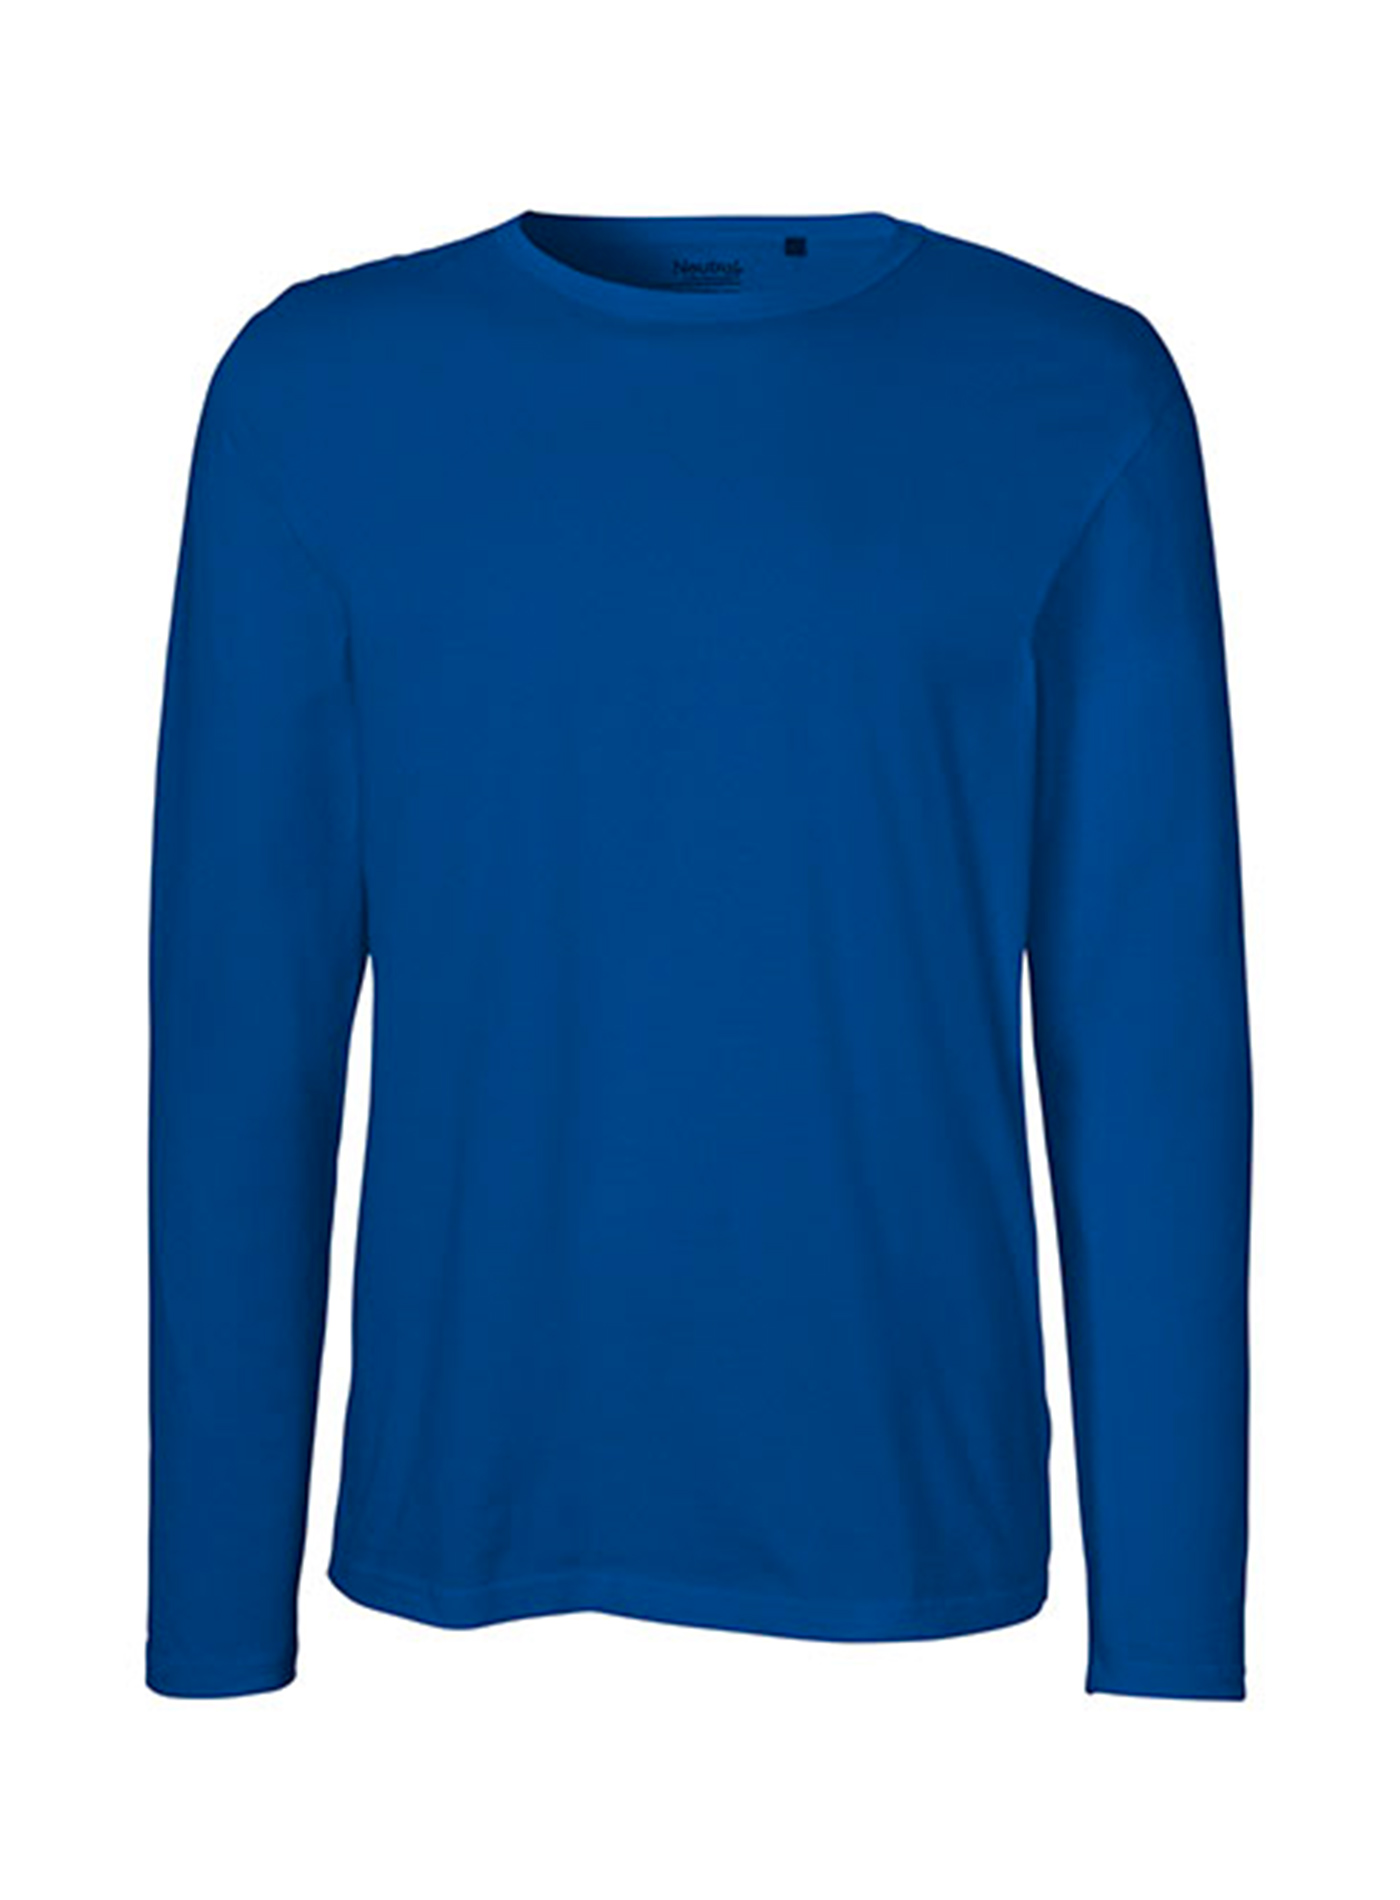 Pánské tričko s dlouhým rukávem Neutral - Královská modrá L